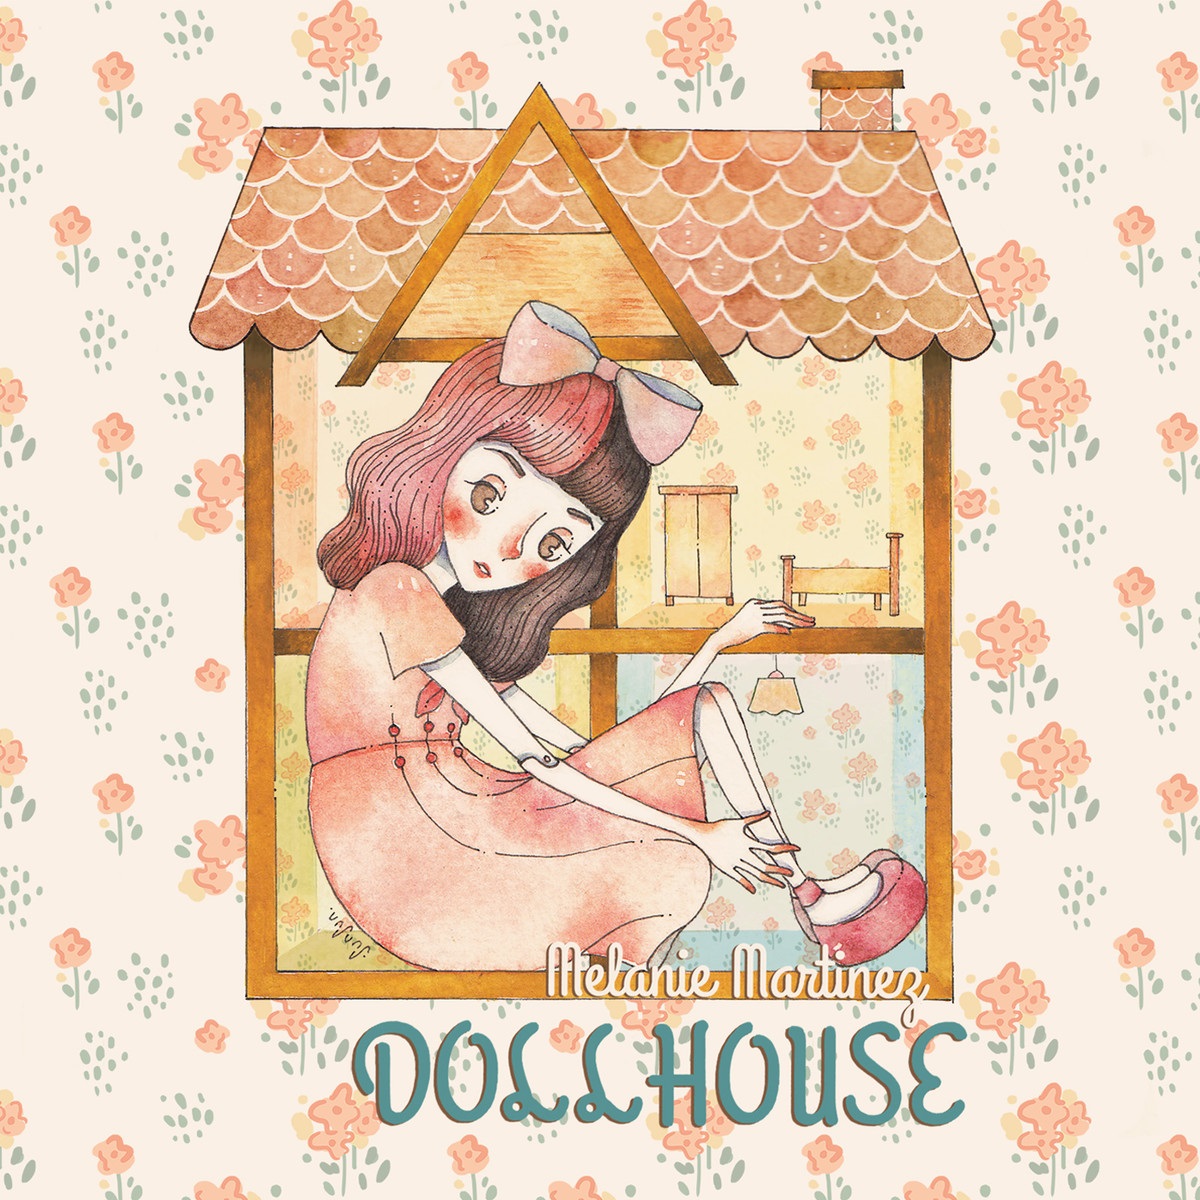 DOLLHOUSE-Melanie Martinez-sped up- do you relate to the #lyrics?#song, Dollhouse Melanie Martinez